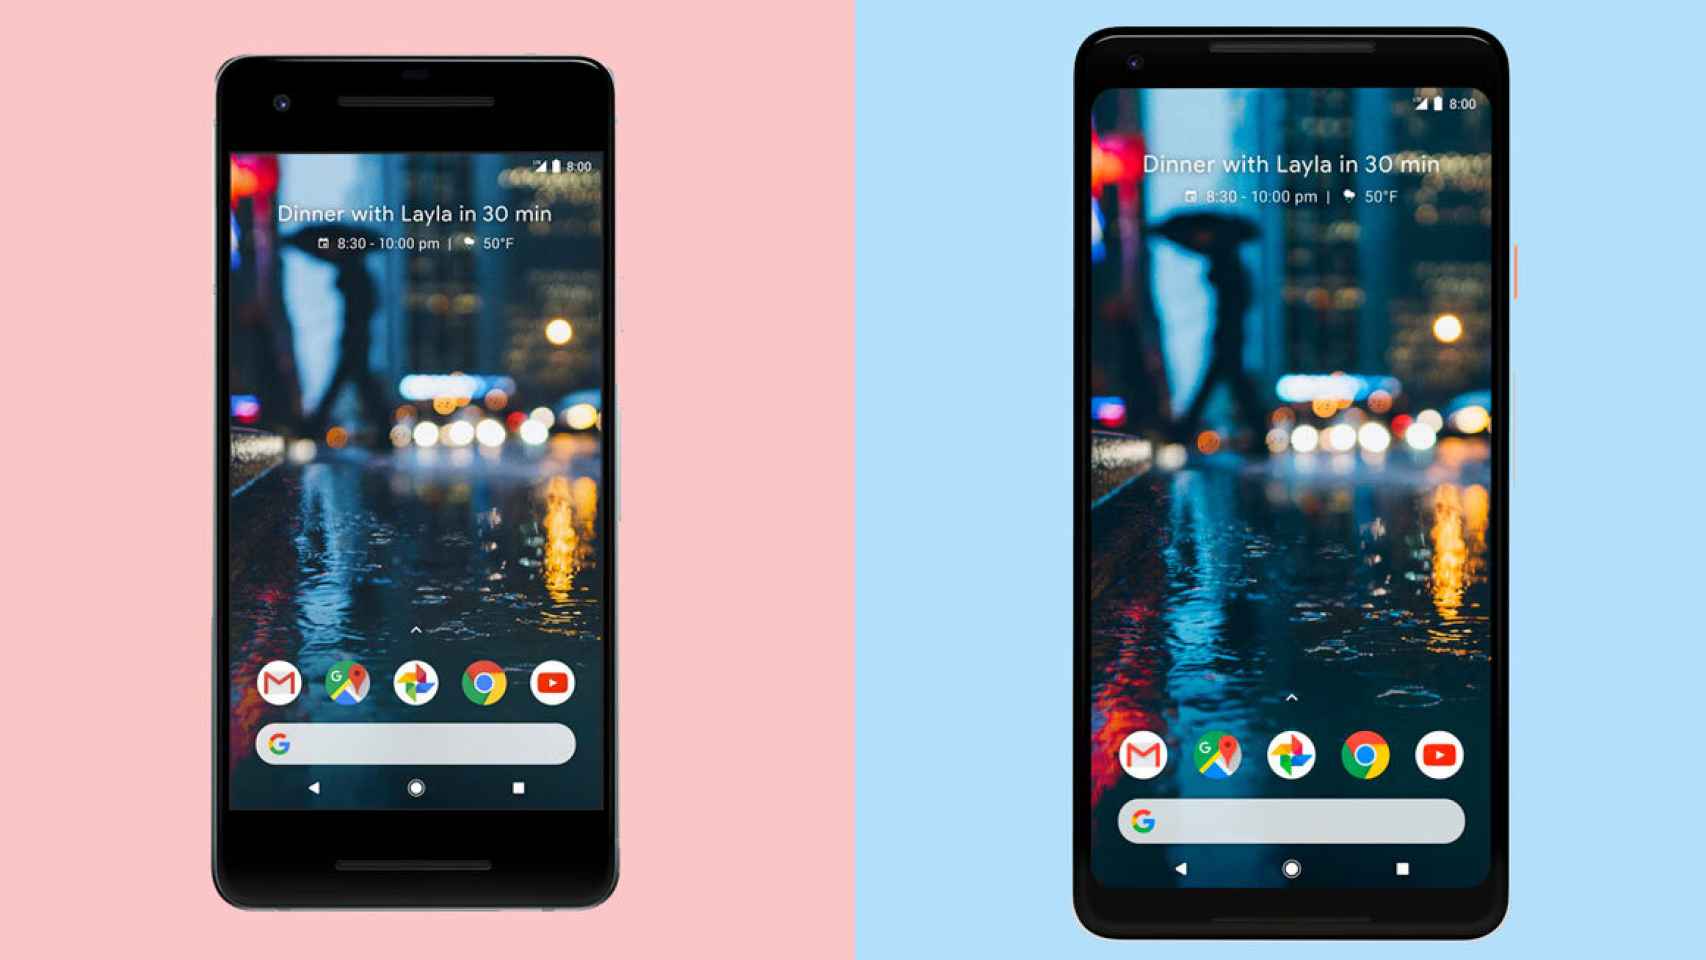 Los Google Pixel 2 son los únicos con 3 años de actualizaciones Android